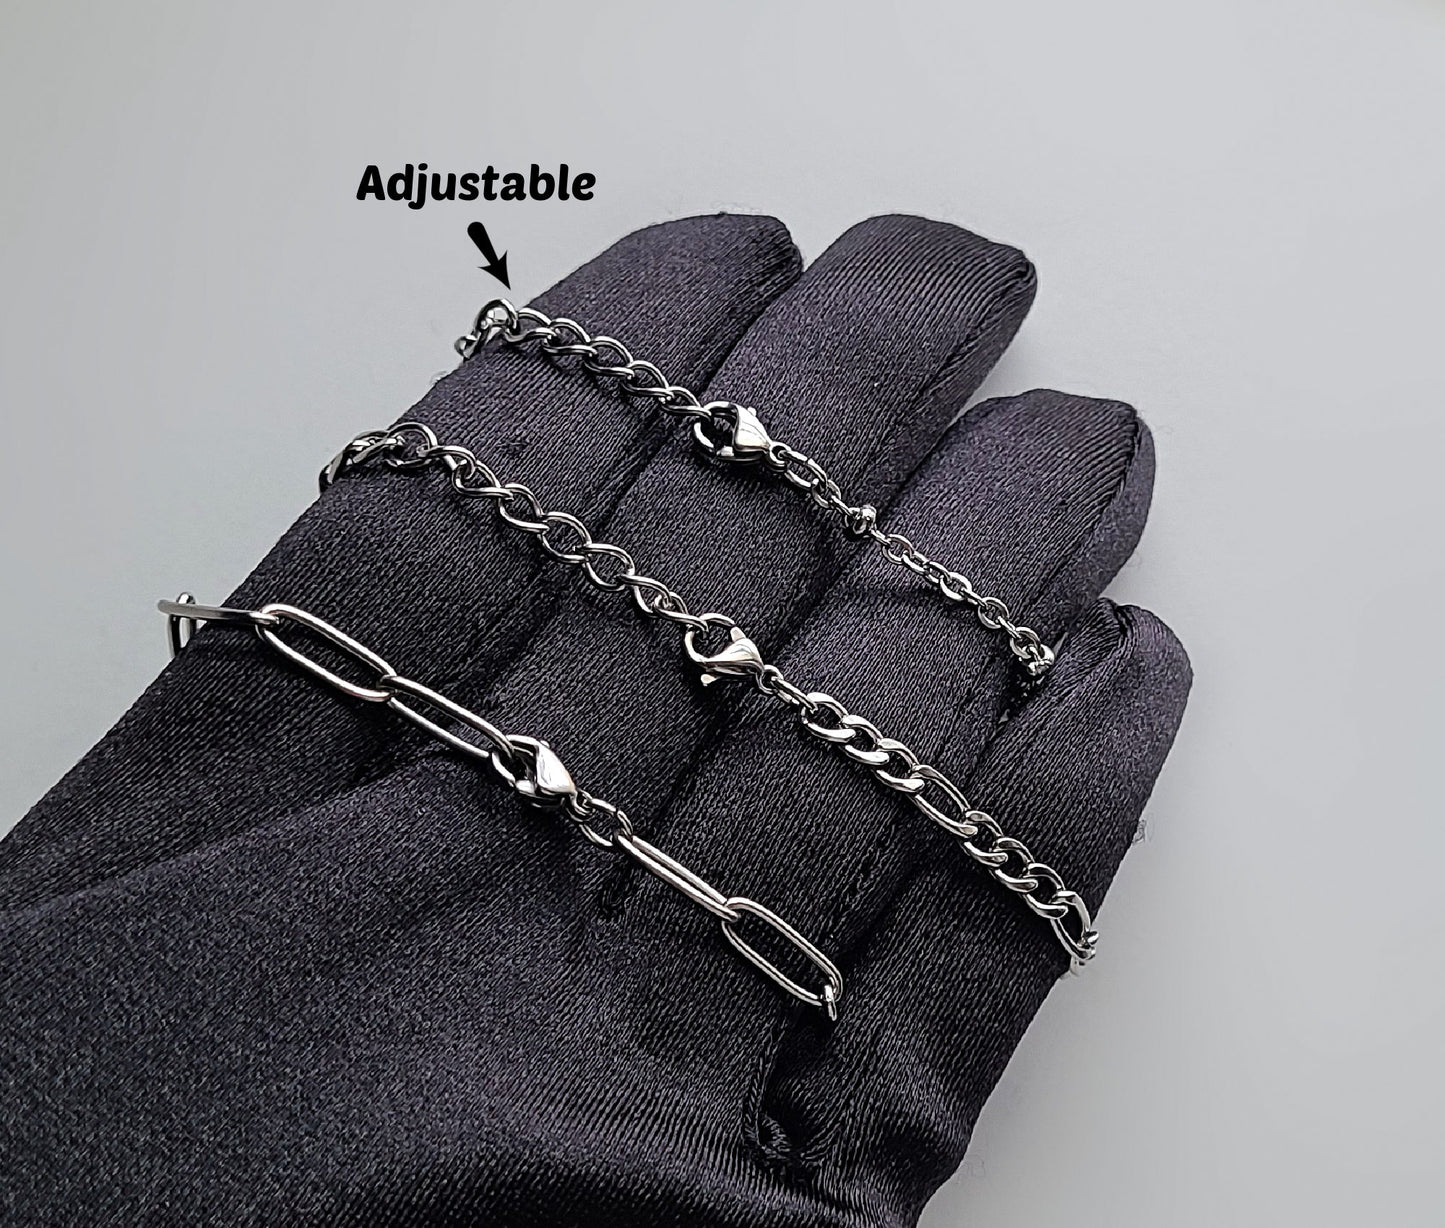 Stainless Steel Adjustable Textured Oval Bracelet / Anklet